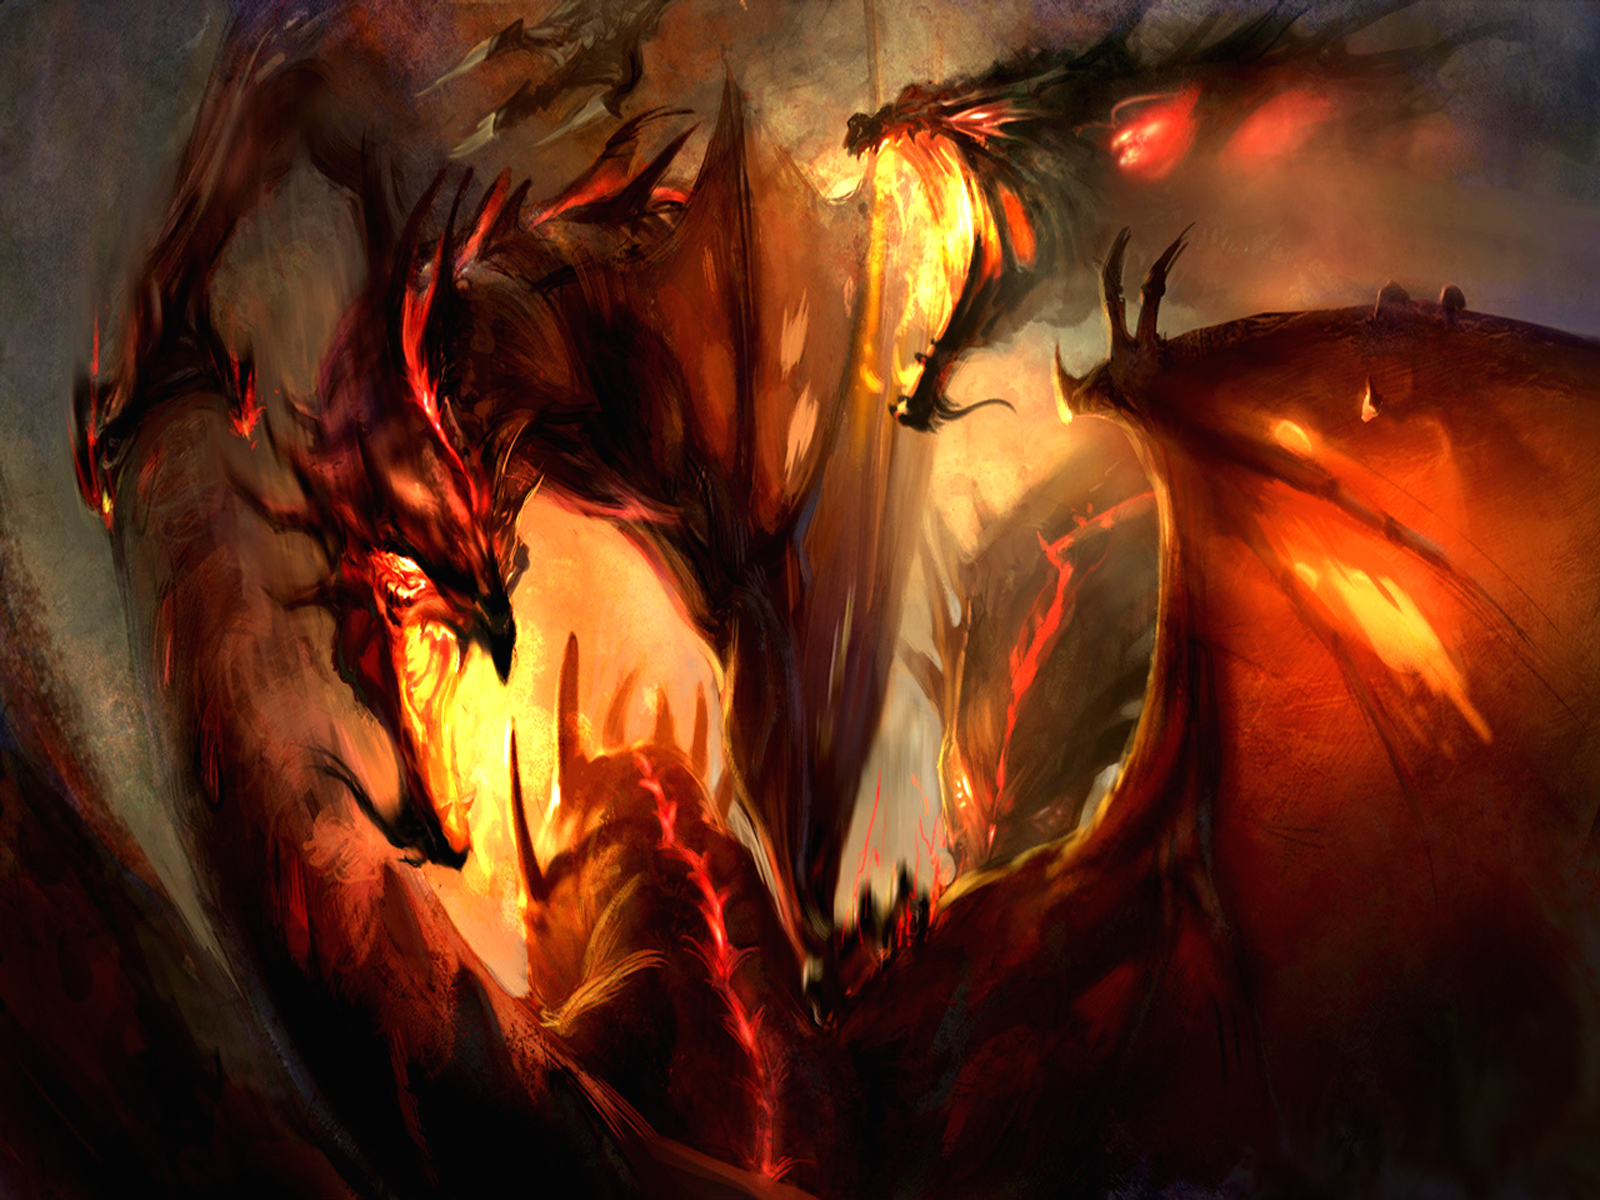 meilleur fond d'écran de dragon,démon,oeuvre de cg,personnage fictif,illustration,chaleur